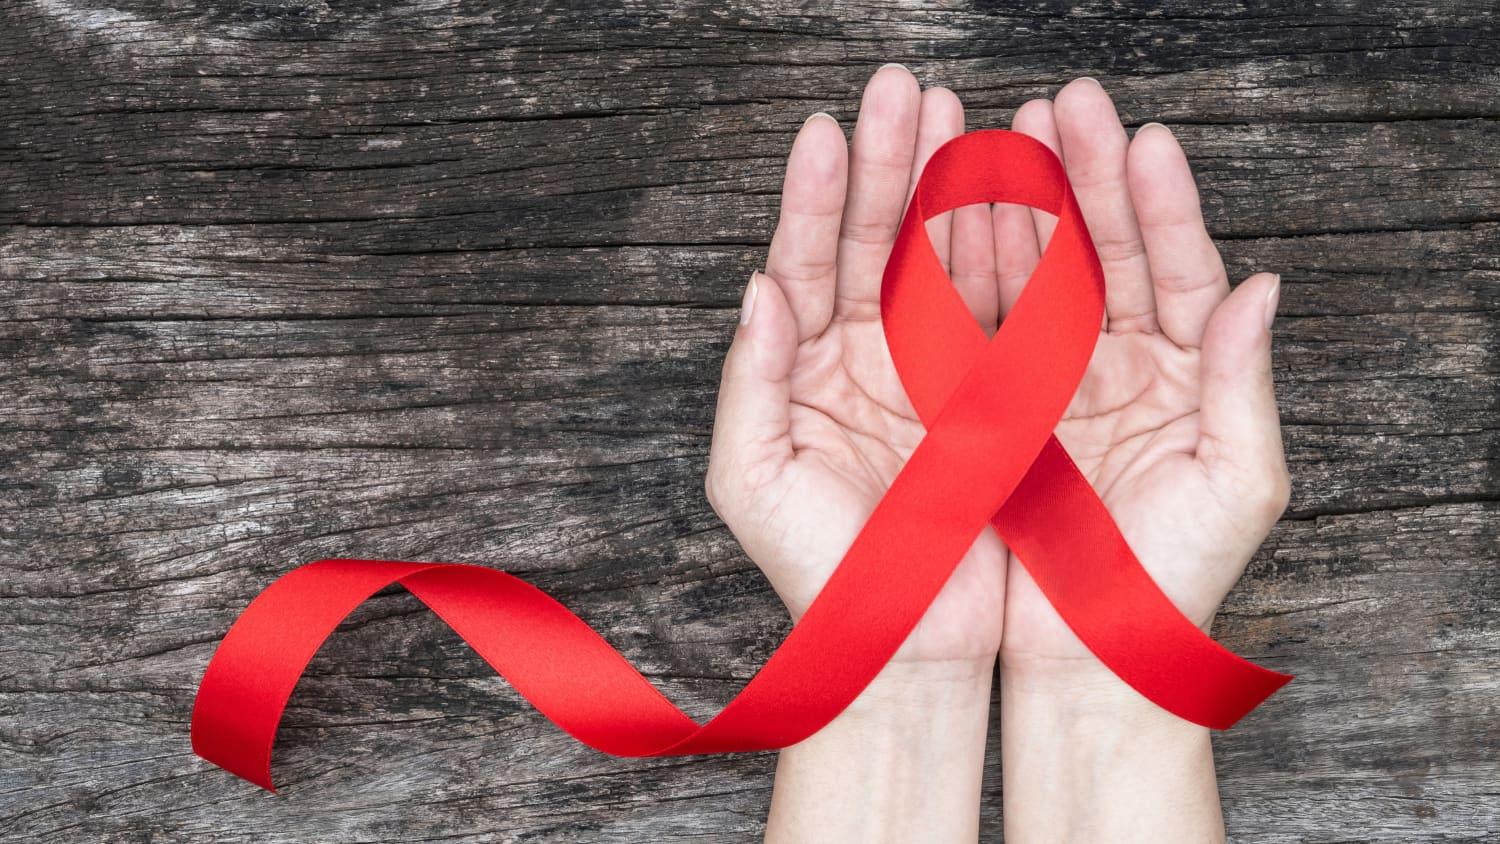 Svjetski dan borbe protiv HIV/AIDS-a: Prevencija bolesti uključuje informaciju, edukaciju i testiranje